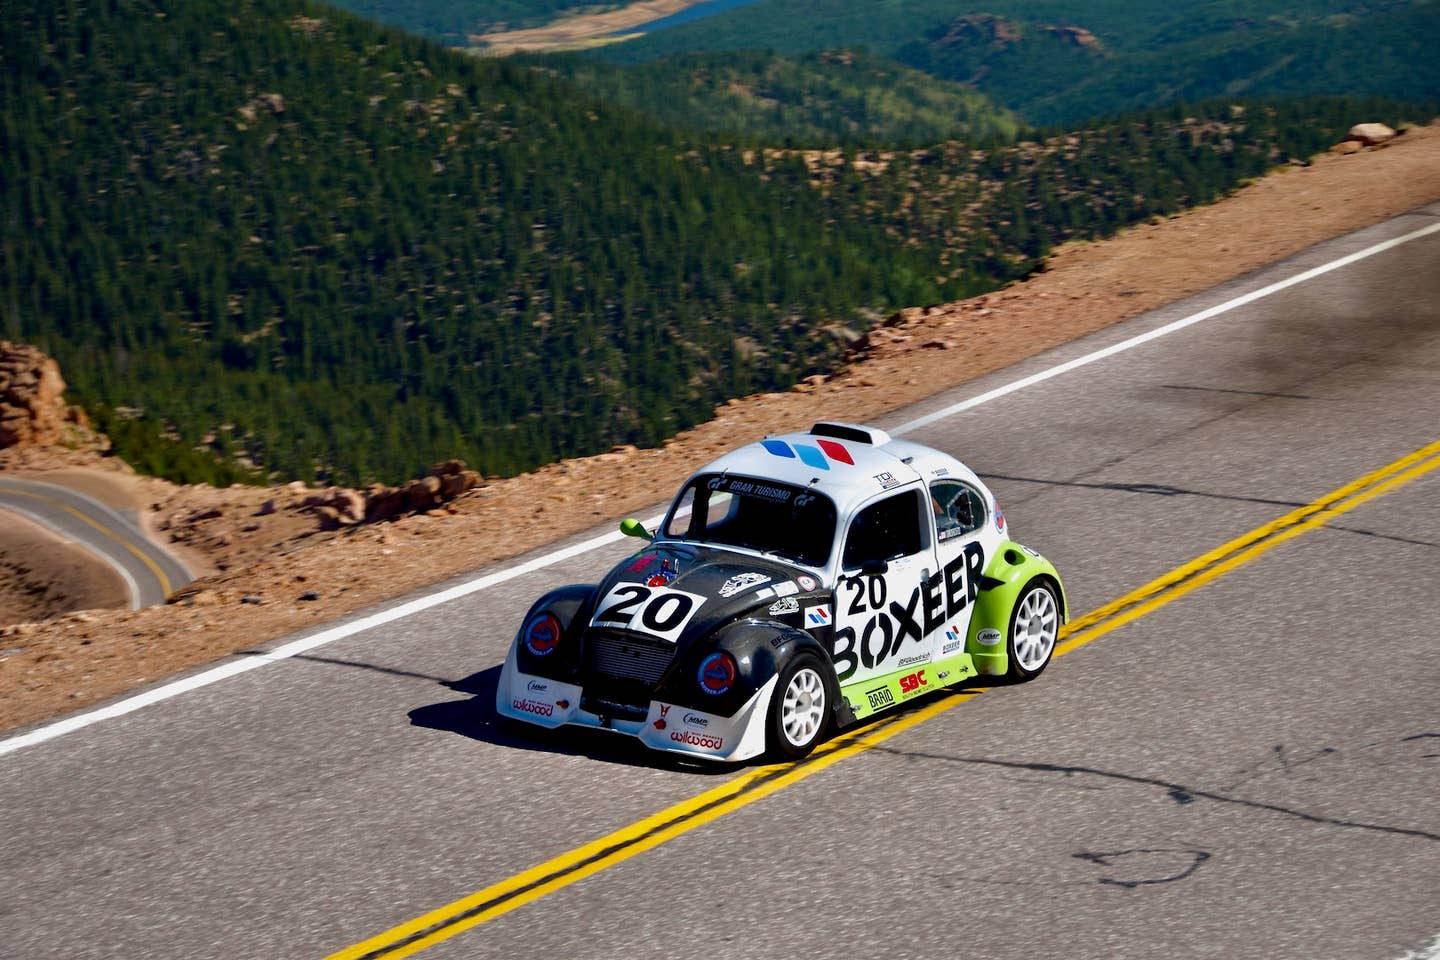 Blachon's twin-turbo TDI VW Beetle at the 2020 Pikes Peak International Hill Climb